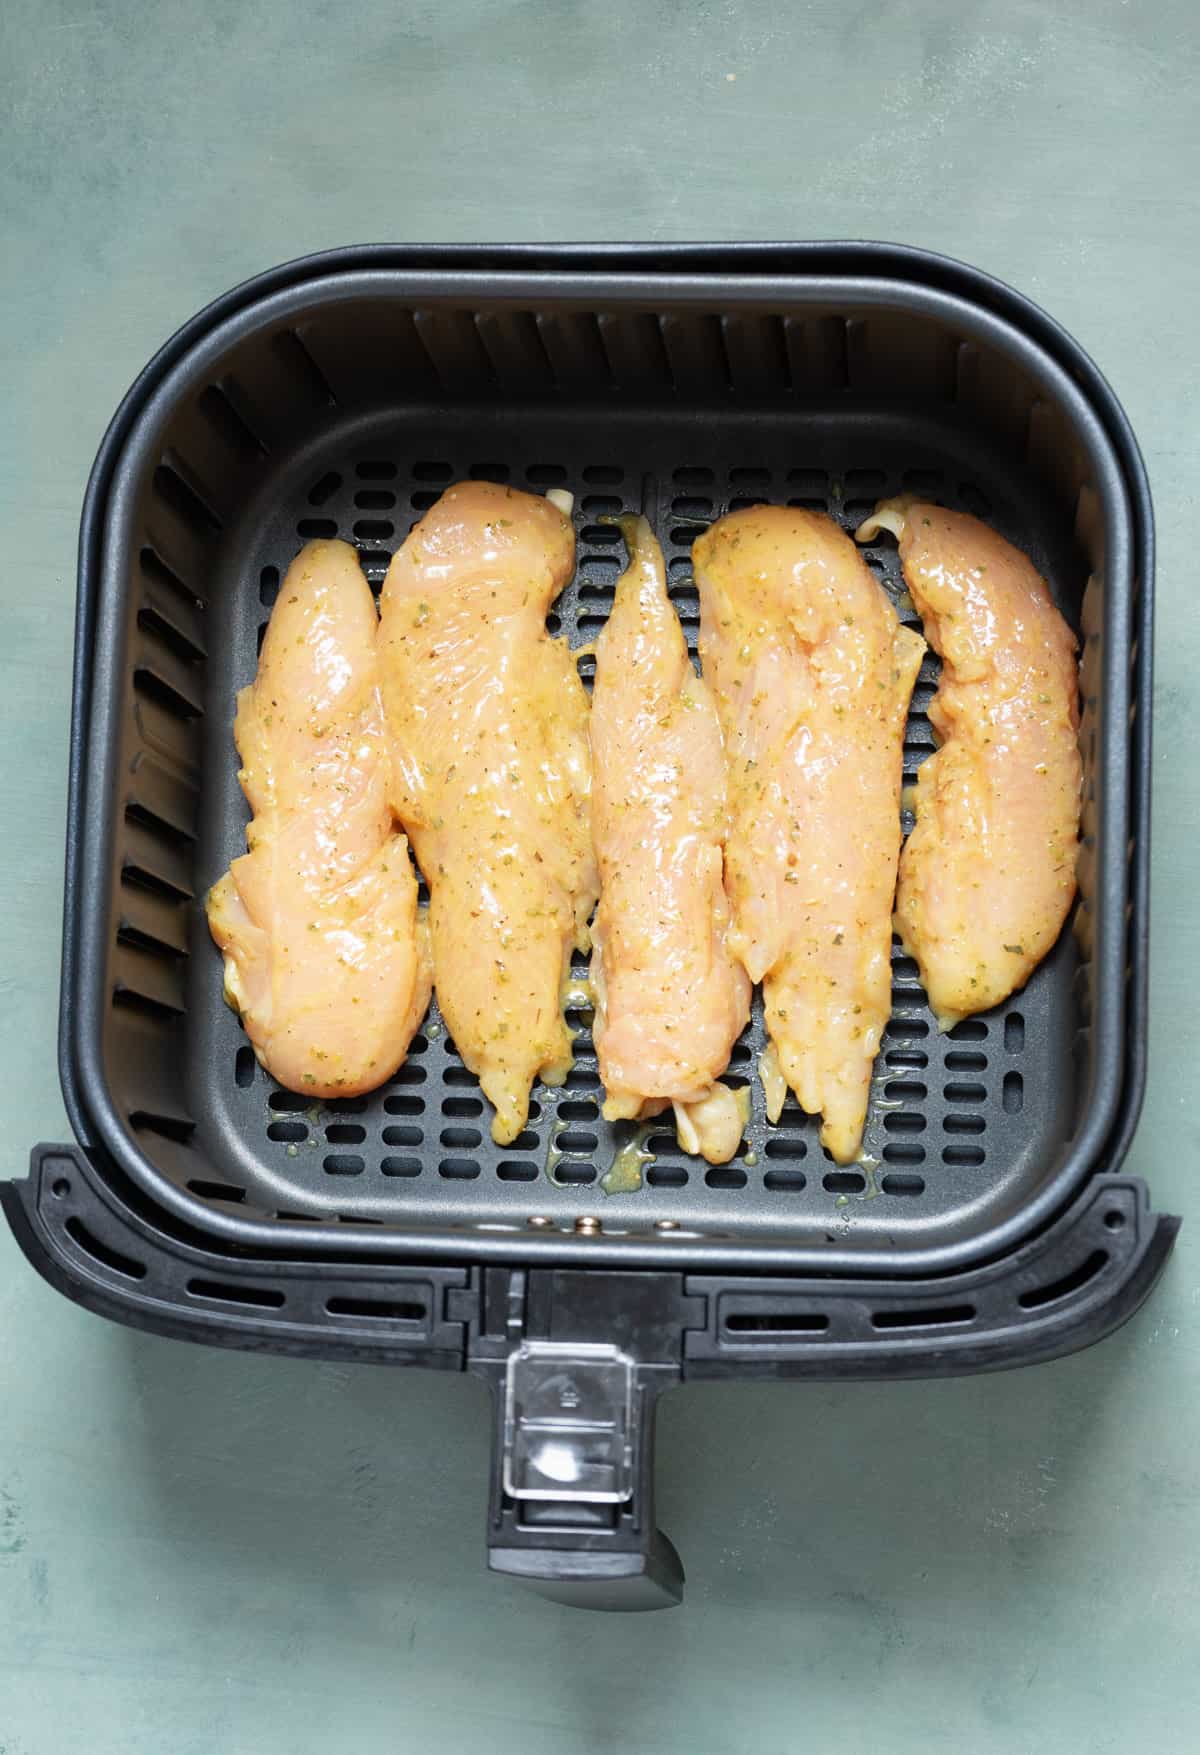 Uncooked chicken tenderloins in the air fryer.